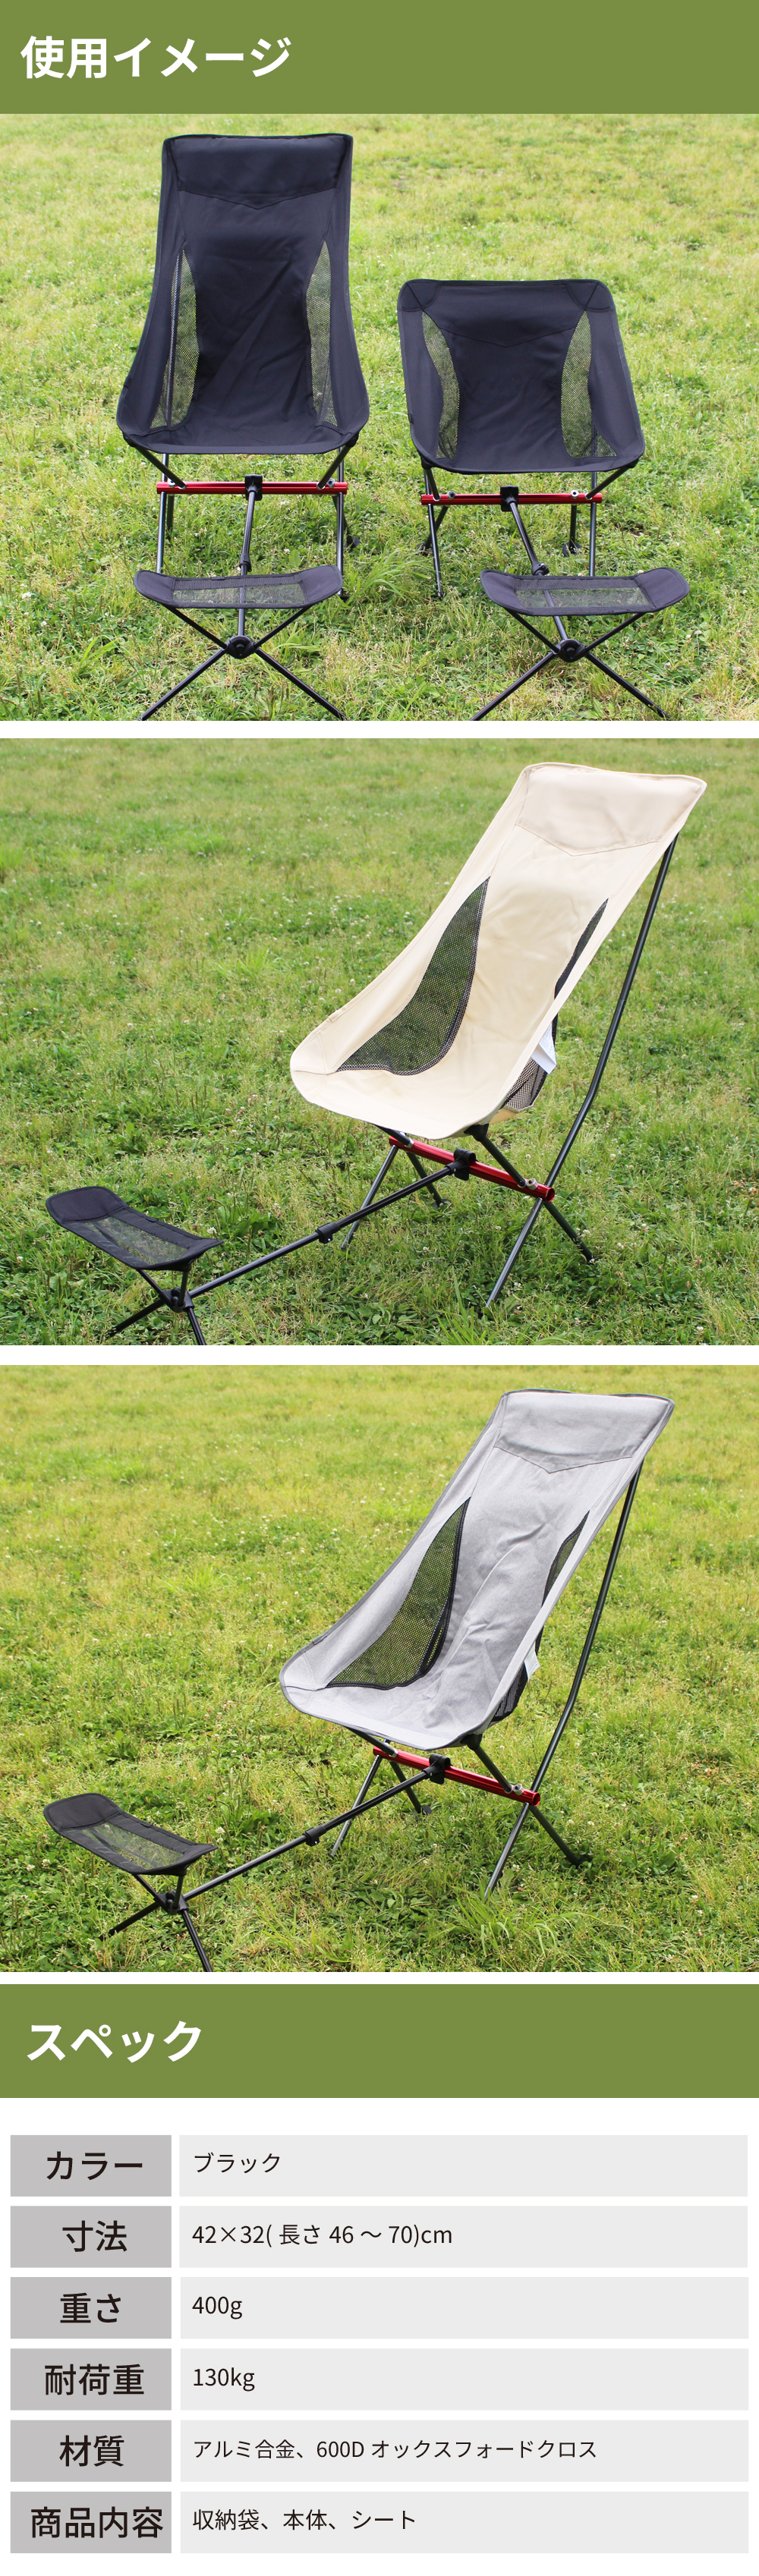 フットレスト アウトドア 足置き アウトドア 折りたたみ 椅子 アウトドア チェアー キャンプチェア フットスツール 折りたたみ  :outdoor-chair-foot:HONEST-ONLINE - 通販 - Yahoo!ショッピング